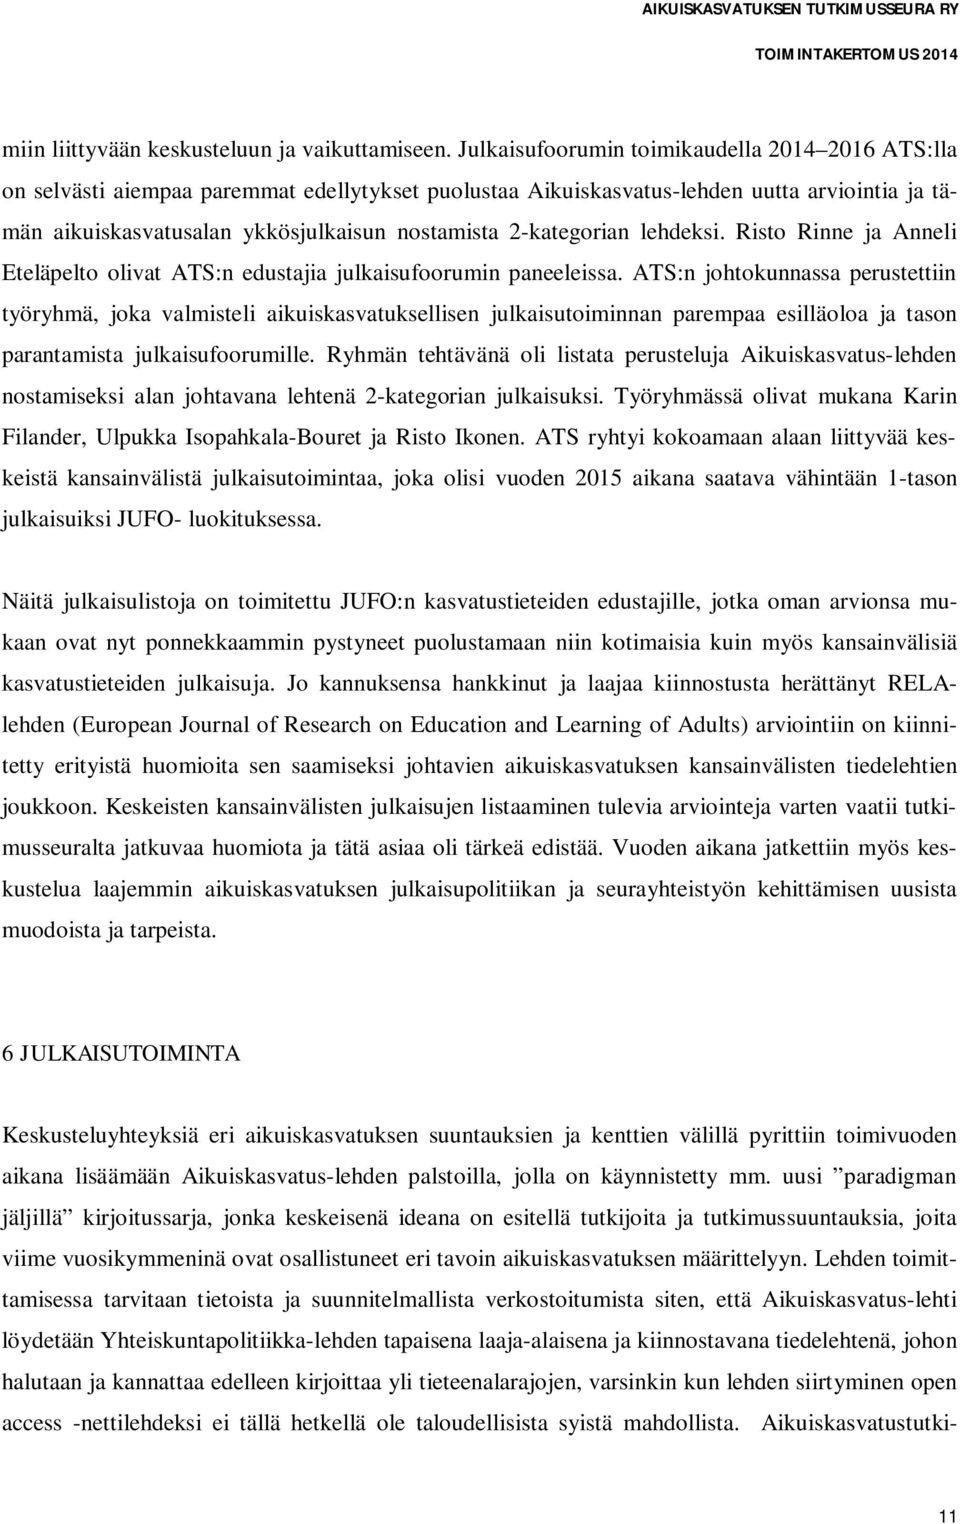 2-kategorian lehdeksi. Risto Rinne ja Anneli Eteläpelto olivat ATS:n edustajia julkaisufoorumin paneeleissa.